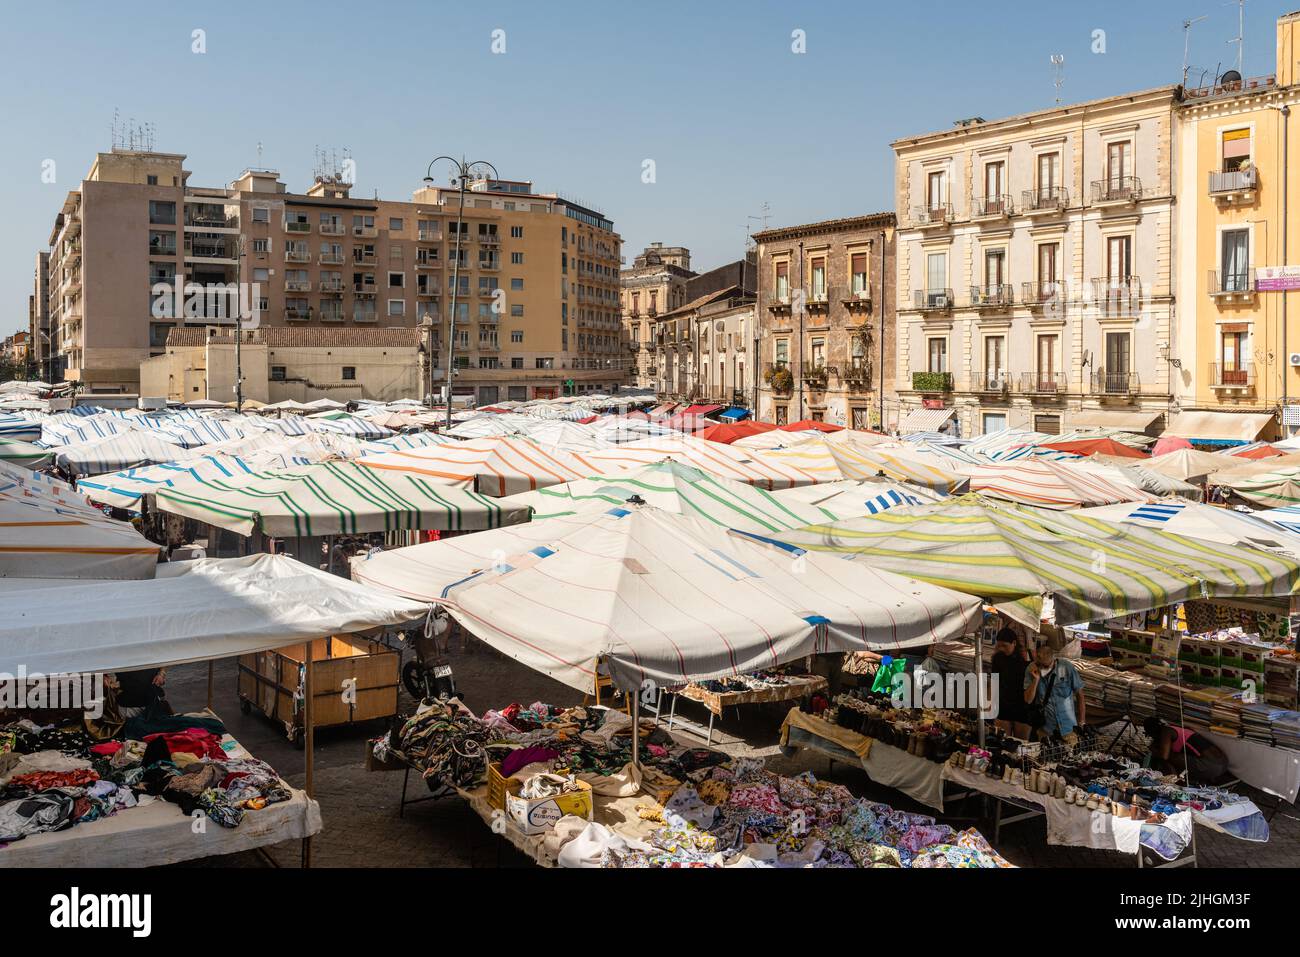 Il mercato giornaliero di via Fera 'o Luni in Piazza Carlo Alberto, nel centro di Catania, Sicilia. È uno dei più antichi mercati all'aperto della città Foto Stock